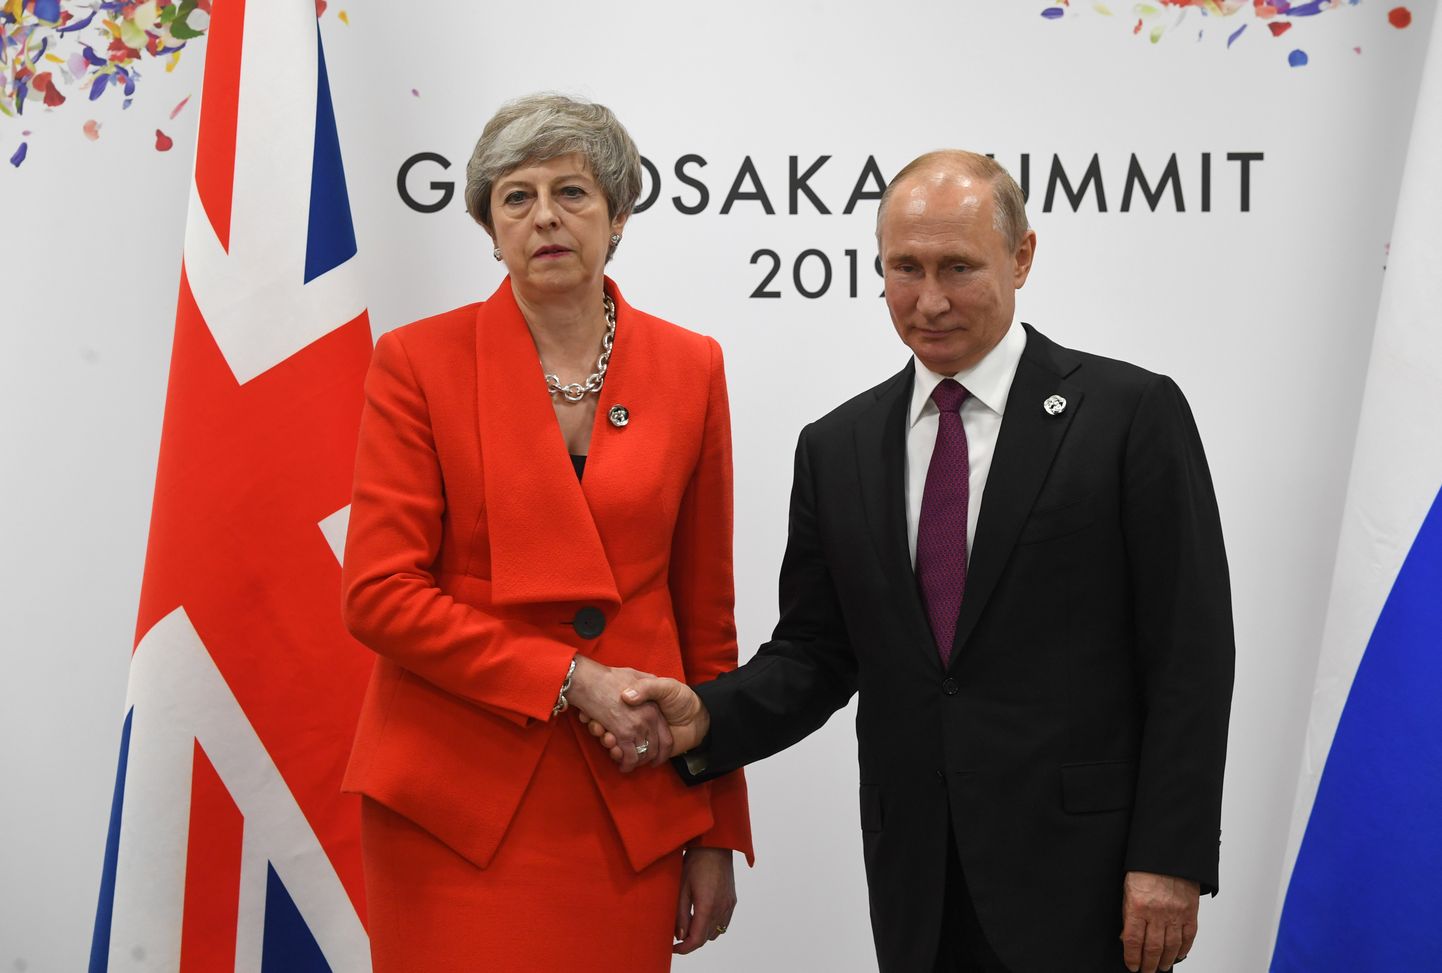 Briti peaminister Theresa May ja Venemaa president Vladimir Putin kätlemas kohtumisel, mis toimus G20 tippkohtumise kõrvalt.